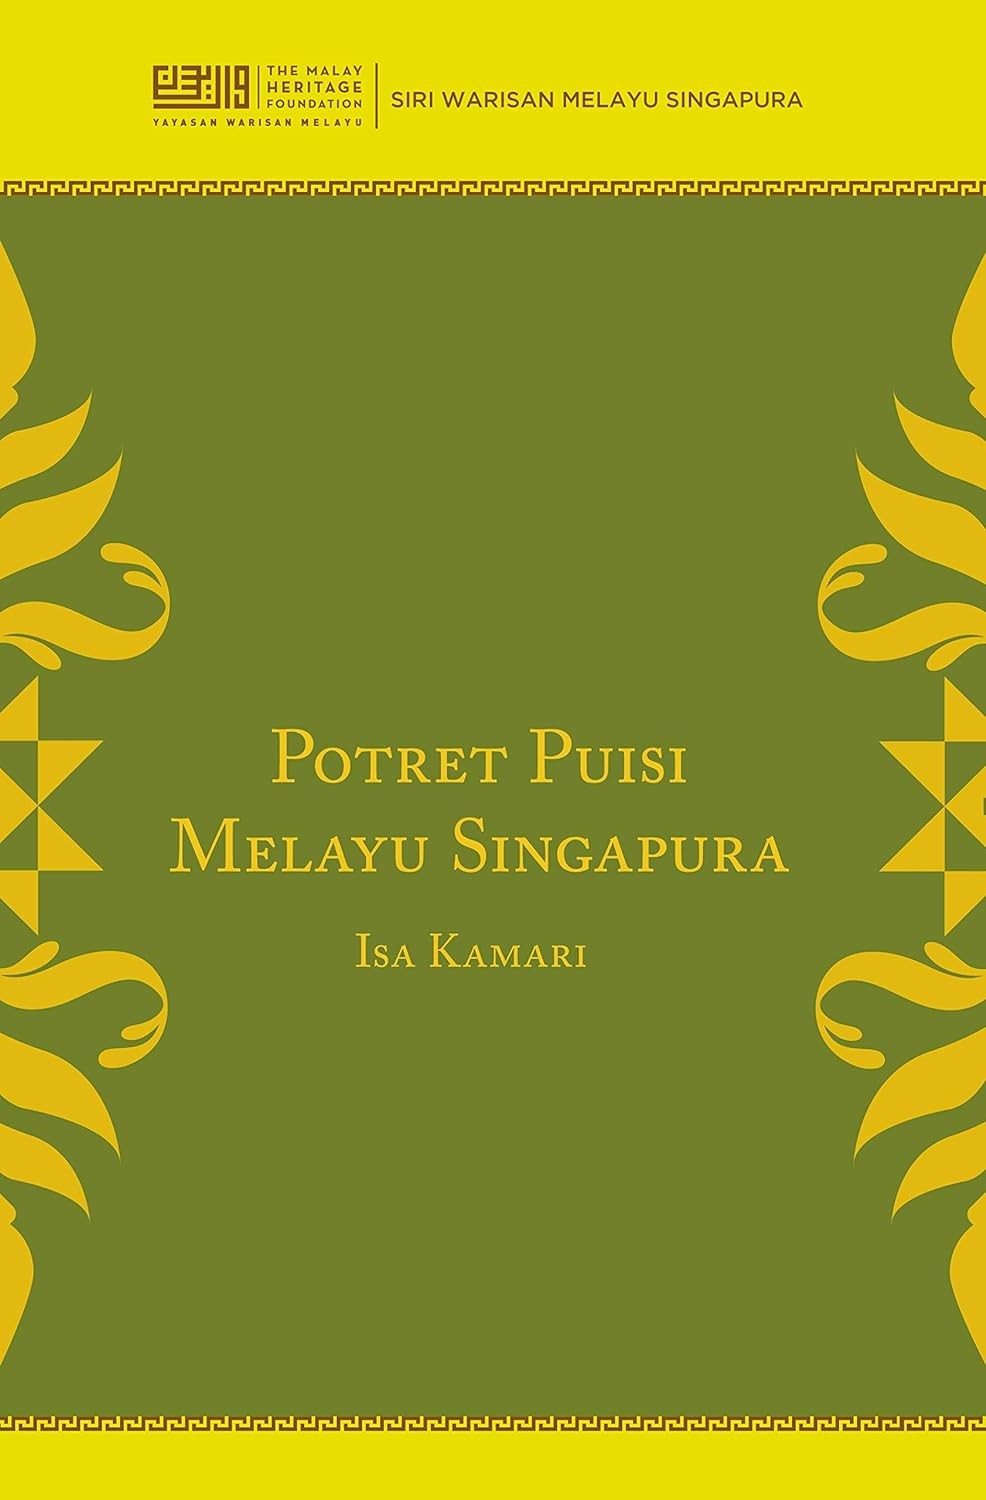 Potret Puisi Melayu Singapura